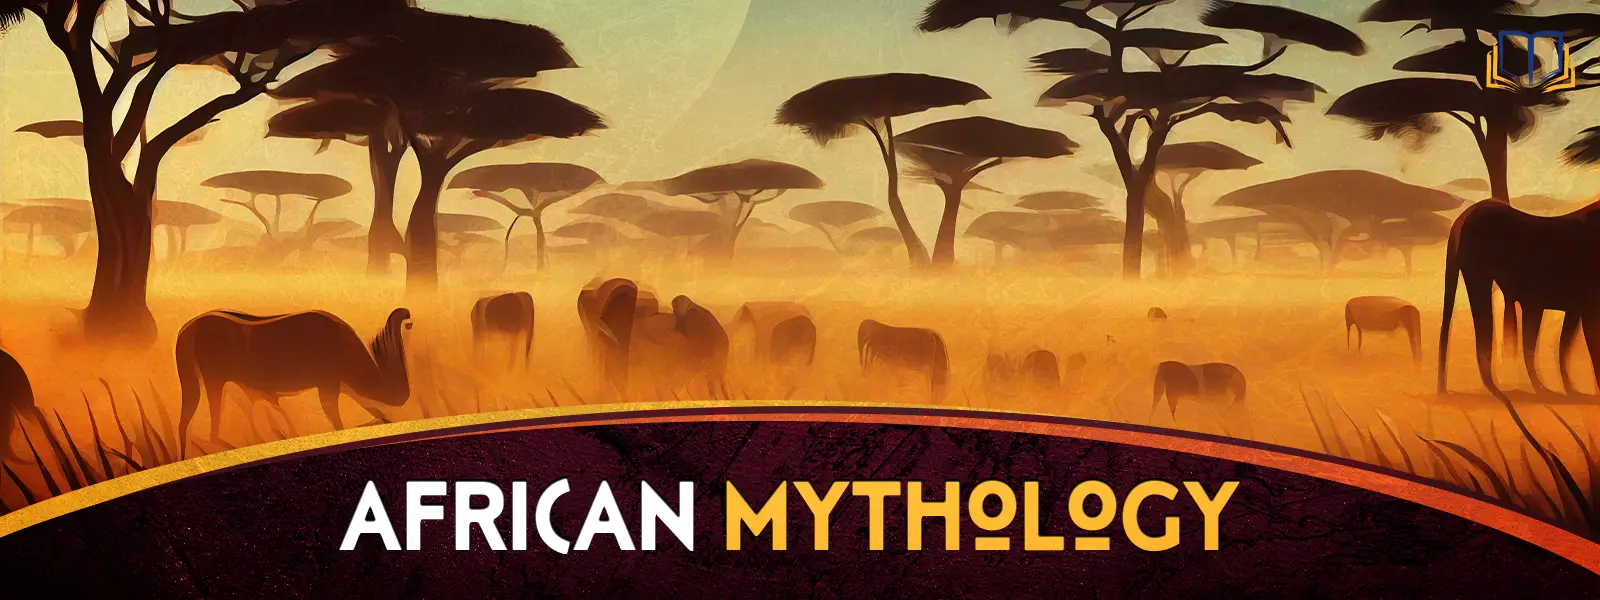 African Mythology Hub Landscape